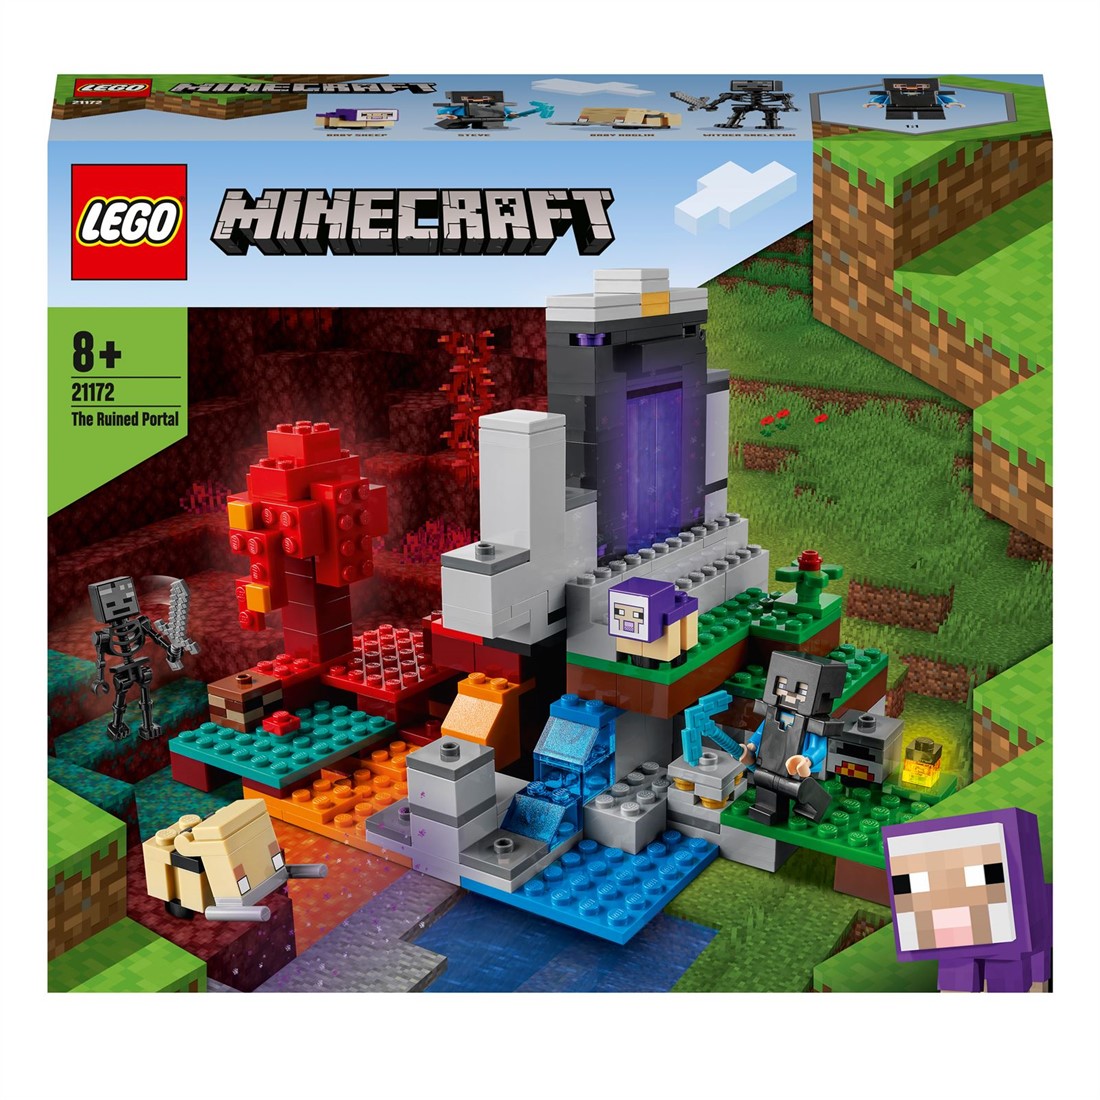 congestie Viool Filosofisch LEGO Minecraft Het Verwoeste Portaal Speelgoed kopen?